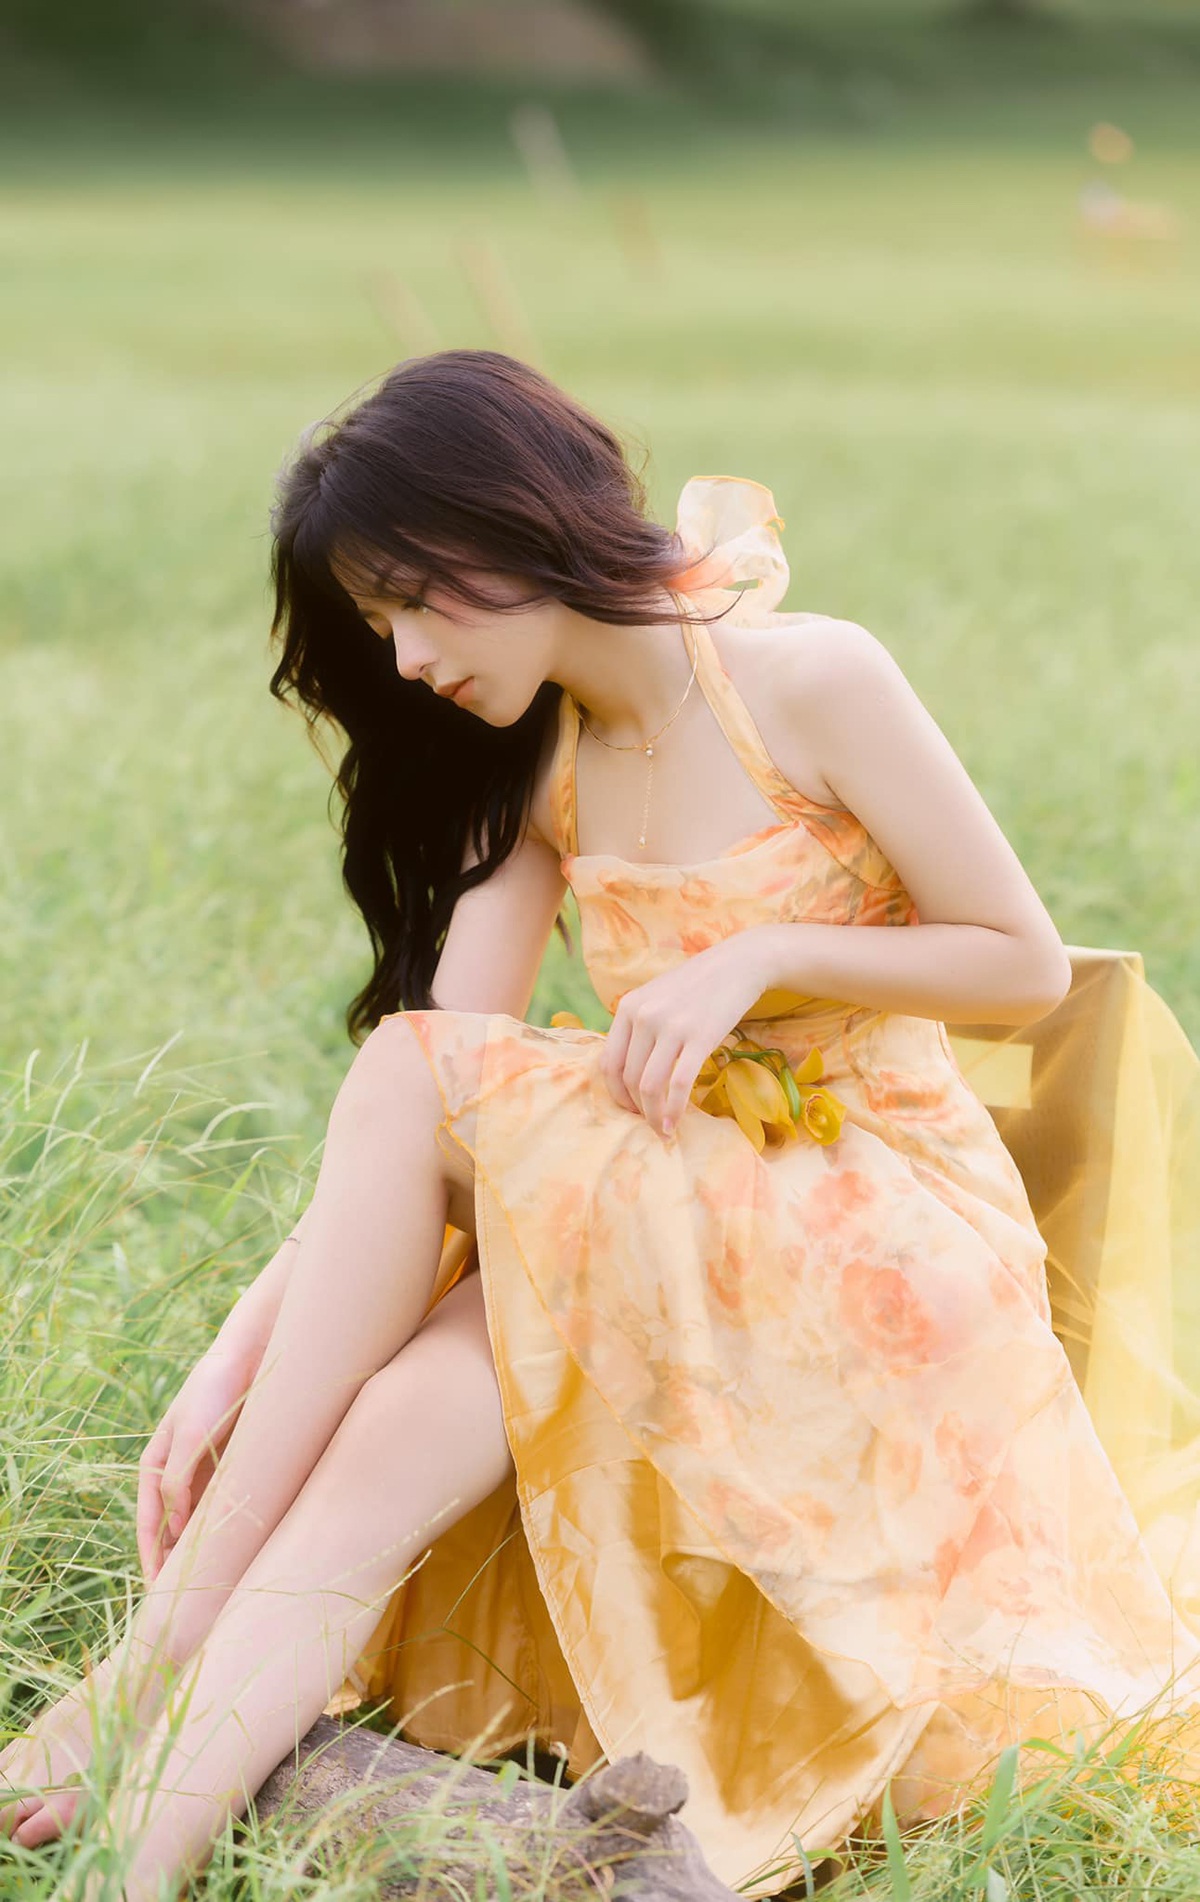 Bộ ảnh khoe vẻ đẹp ngọt ngào của hot girl lạng sơn - 11